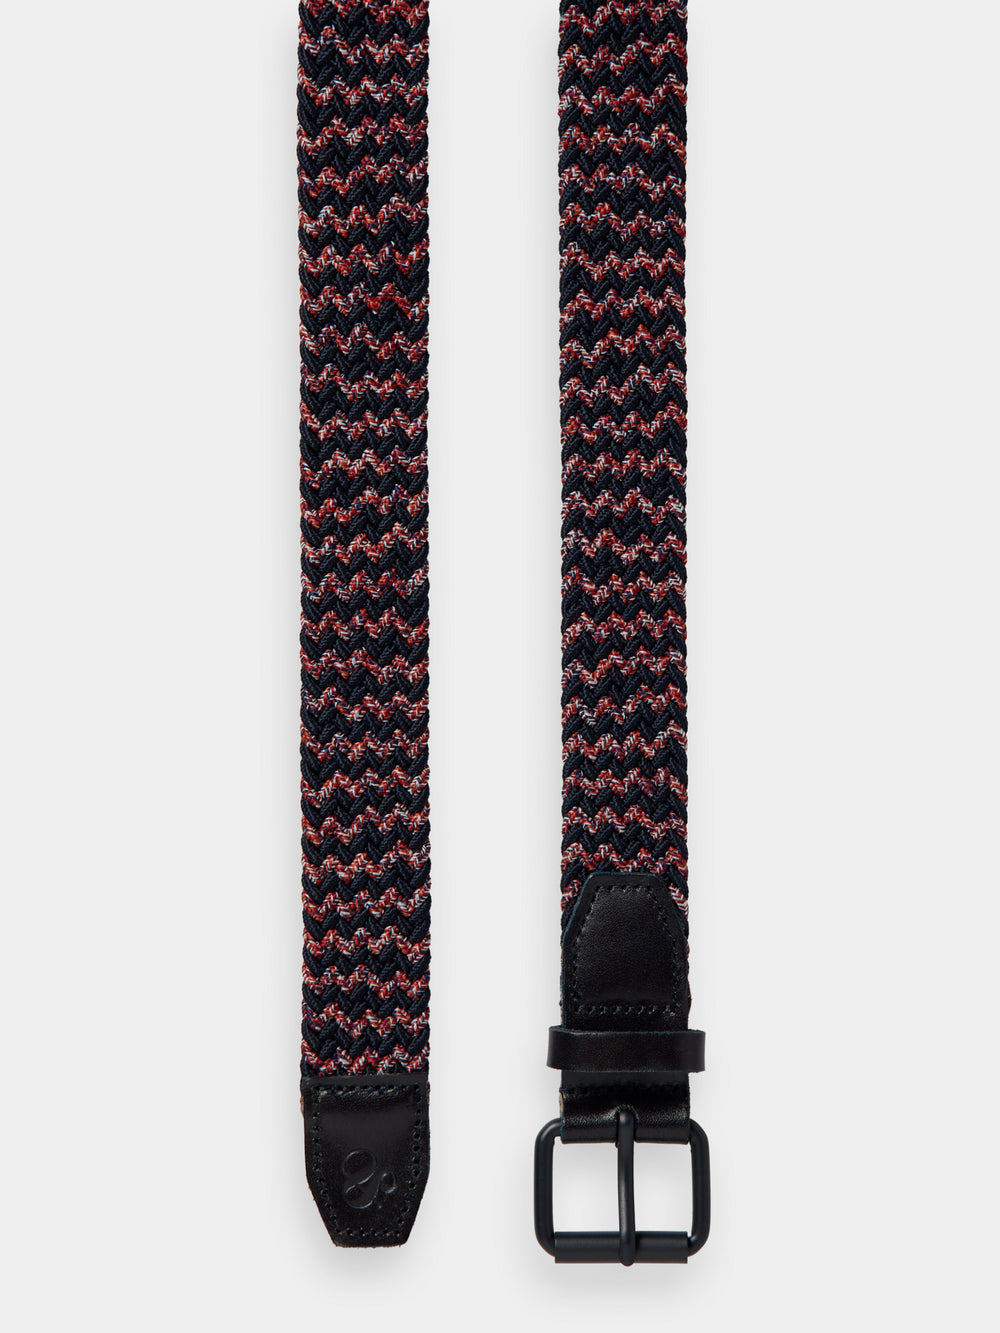 Braided leather & cord belt - Scotch & Soda AU